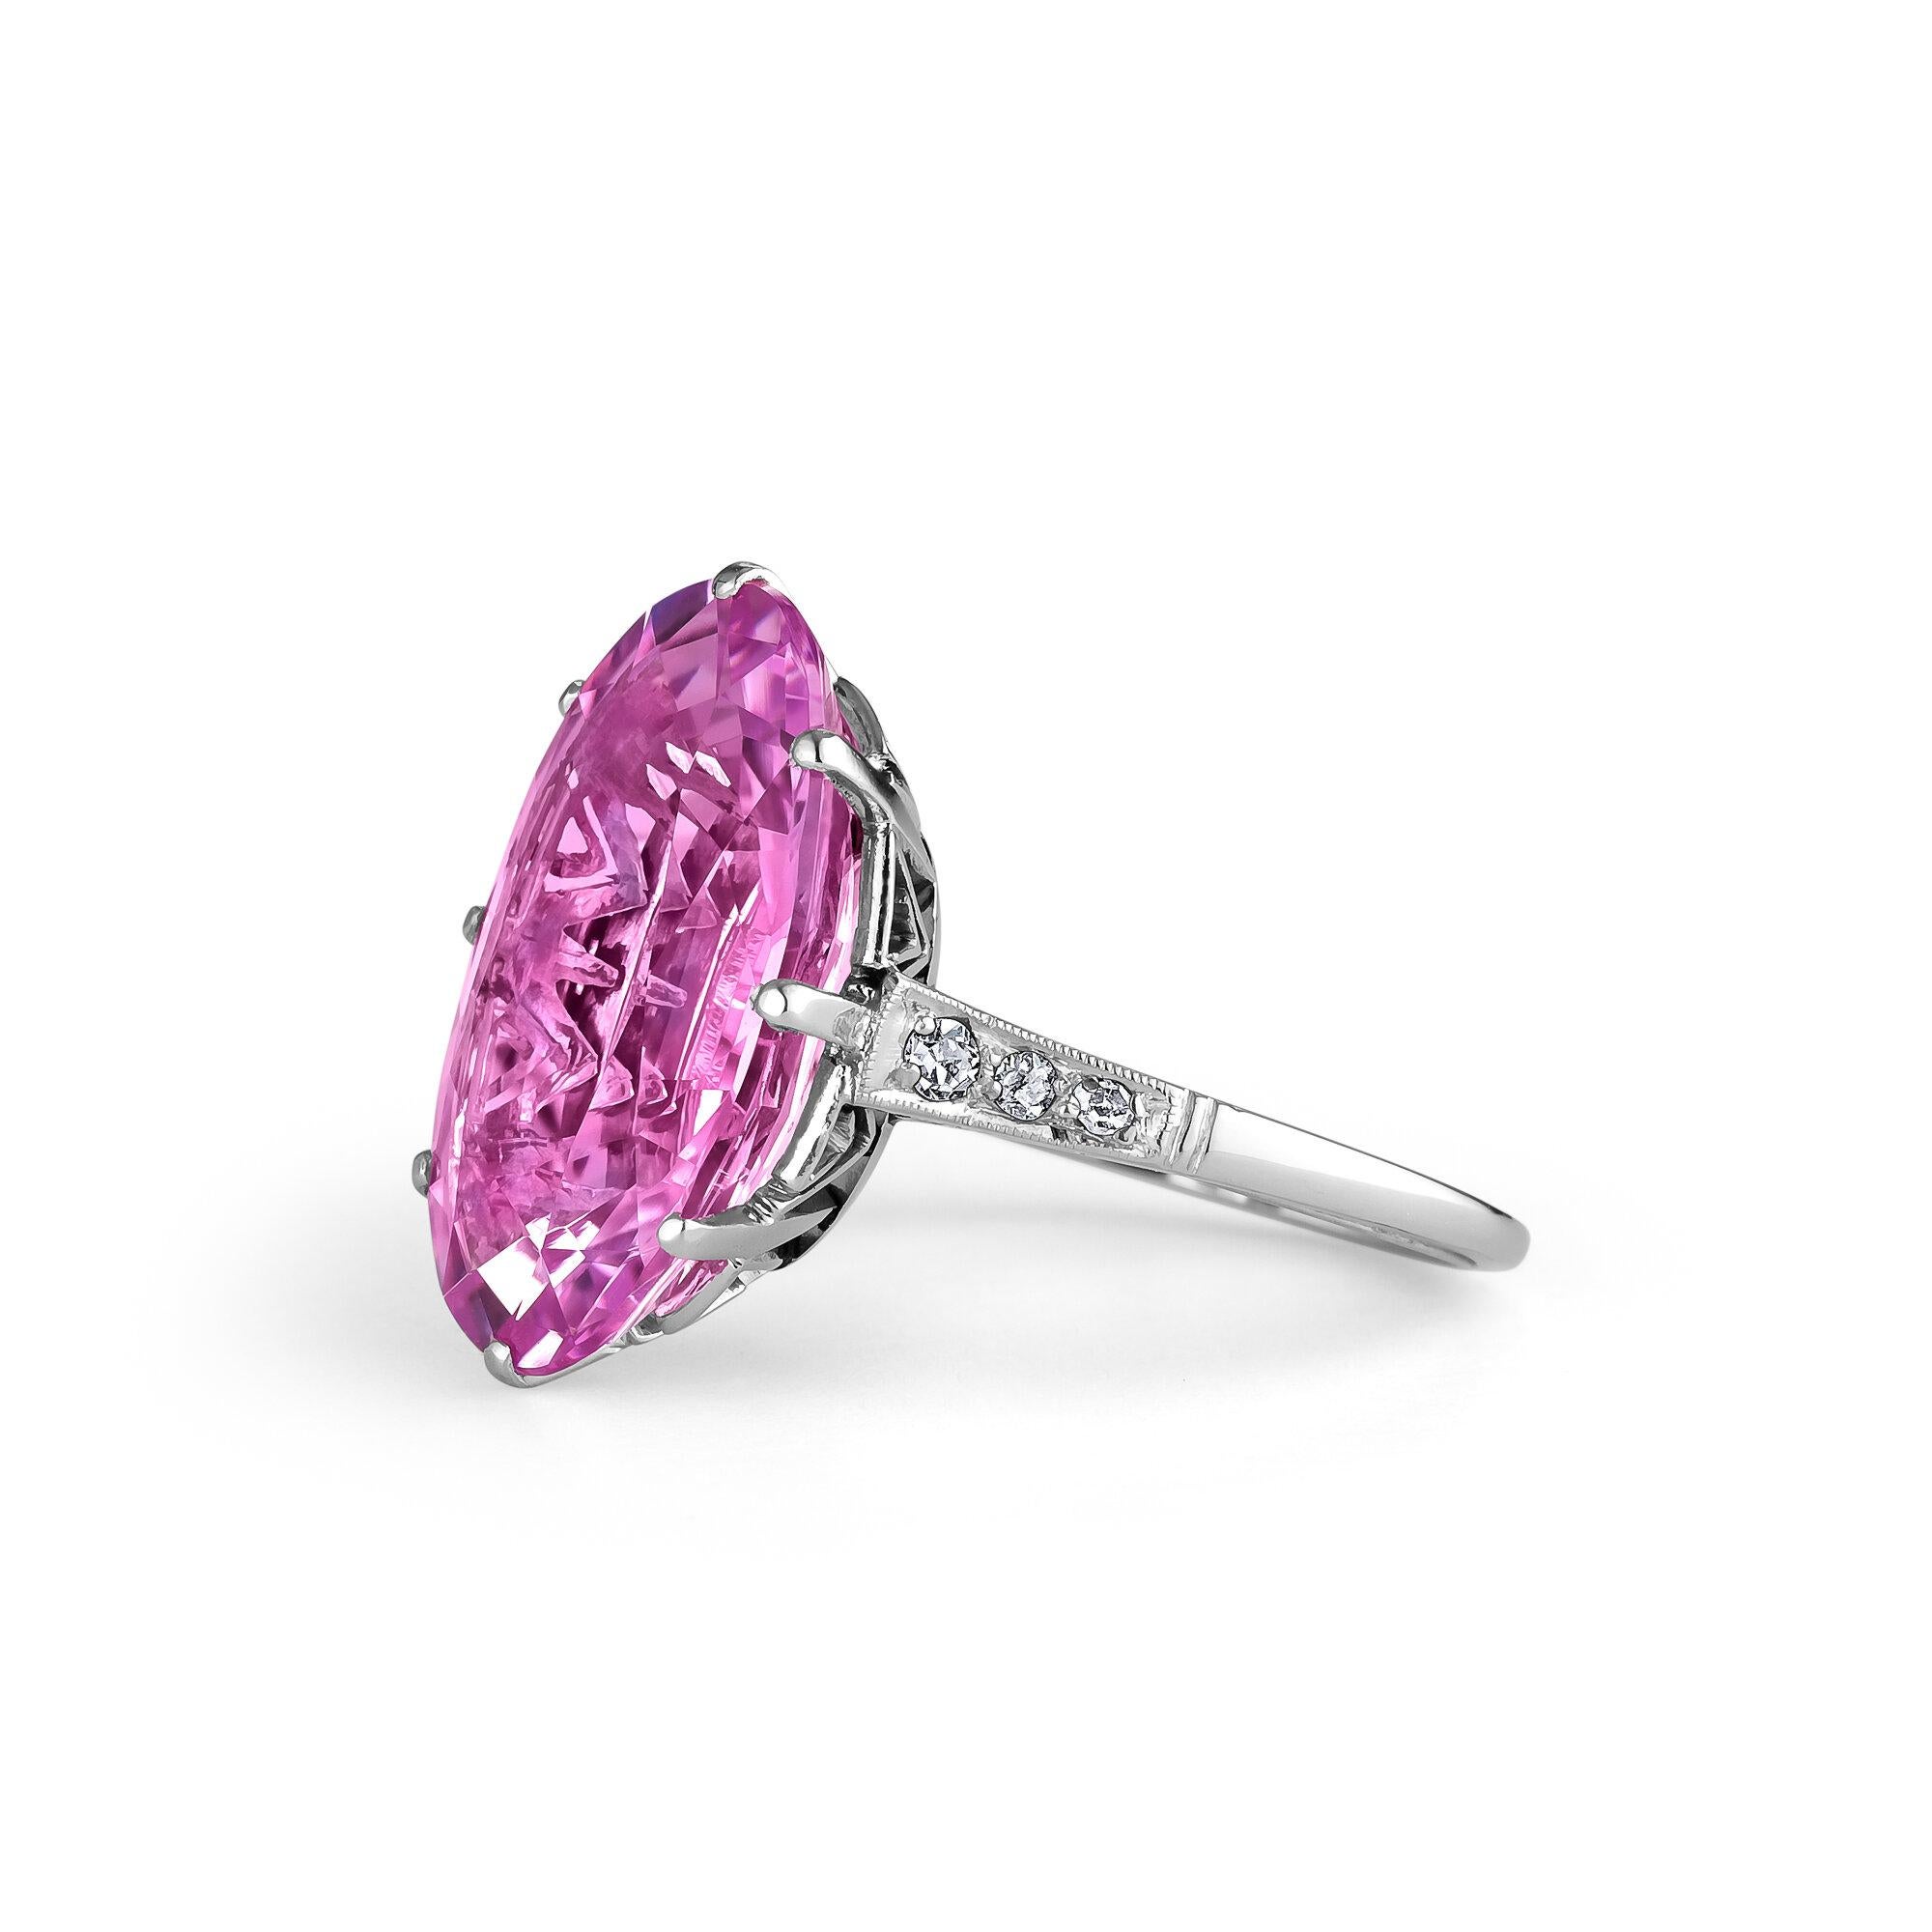 Dieser schimmernde 12,51-Karat-Edelstein im ovalen Kissenschliff mit rosa Topas ist schöner, als man es sich wünschen kann. Er hat lilafarbene Akzente, die ihn köstlich lebendig machen.  Dieser faszinierende Ring ist in einer aufwendig gestalteten